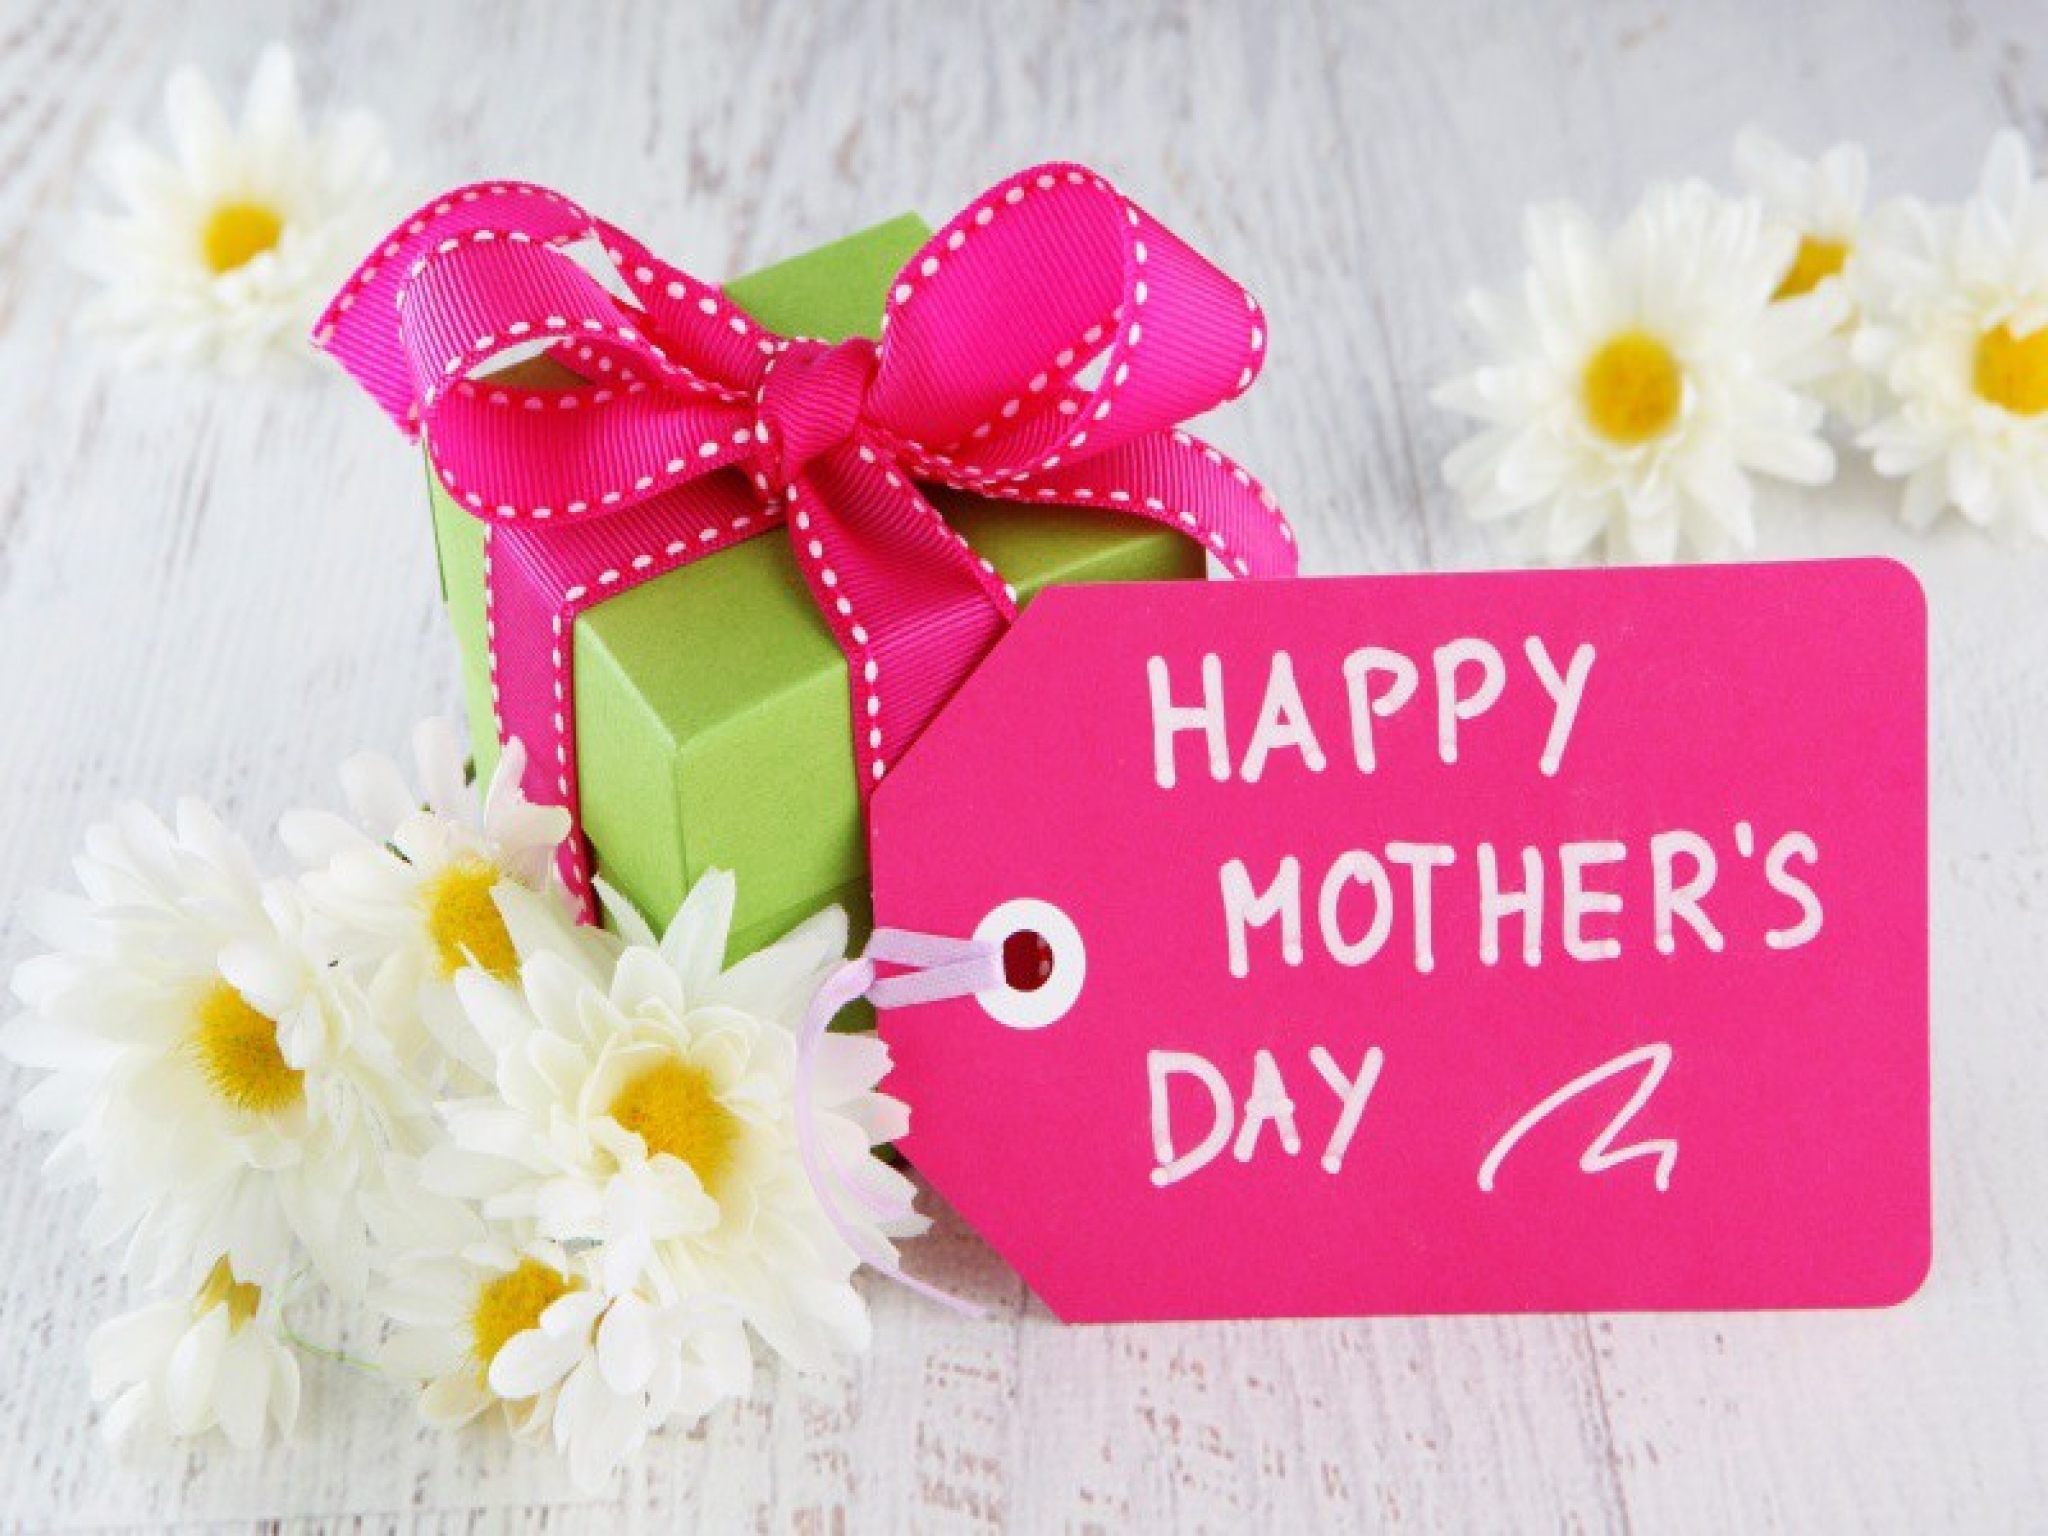 صور وكروت وبطاقات معايدة لعيد الأم - Happy Mother's Day 2020 51